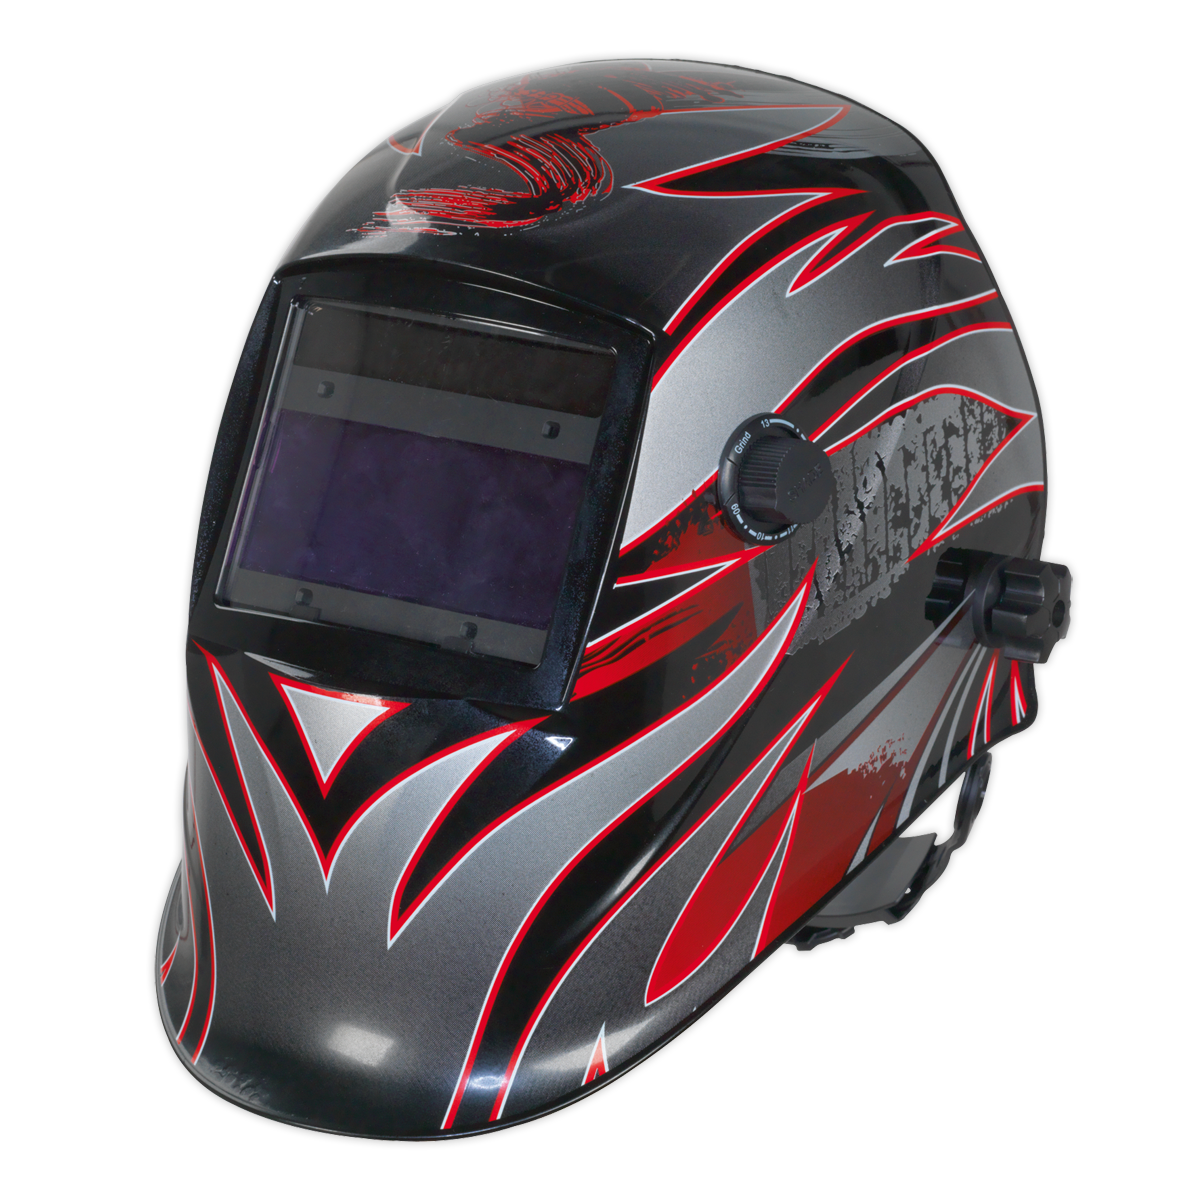 Sealey Welding Helmet Auto Darkening - Shade 9-13 PWH600